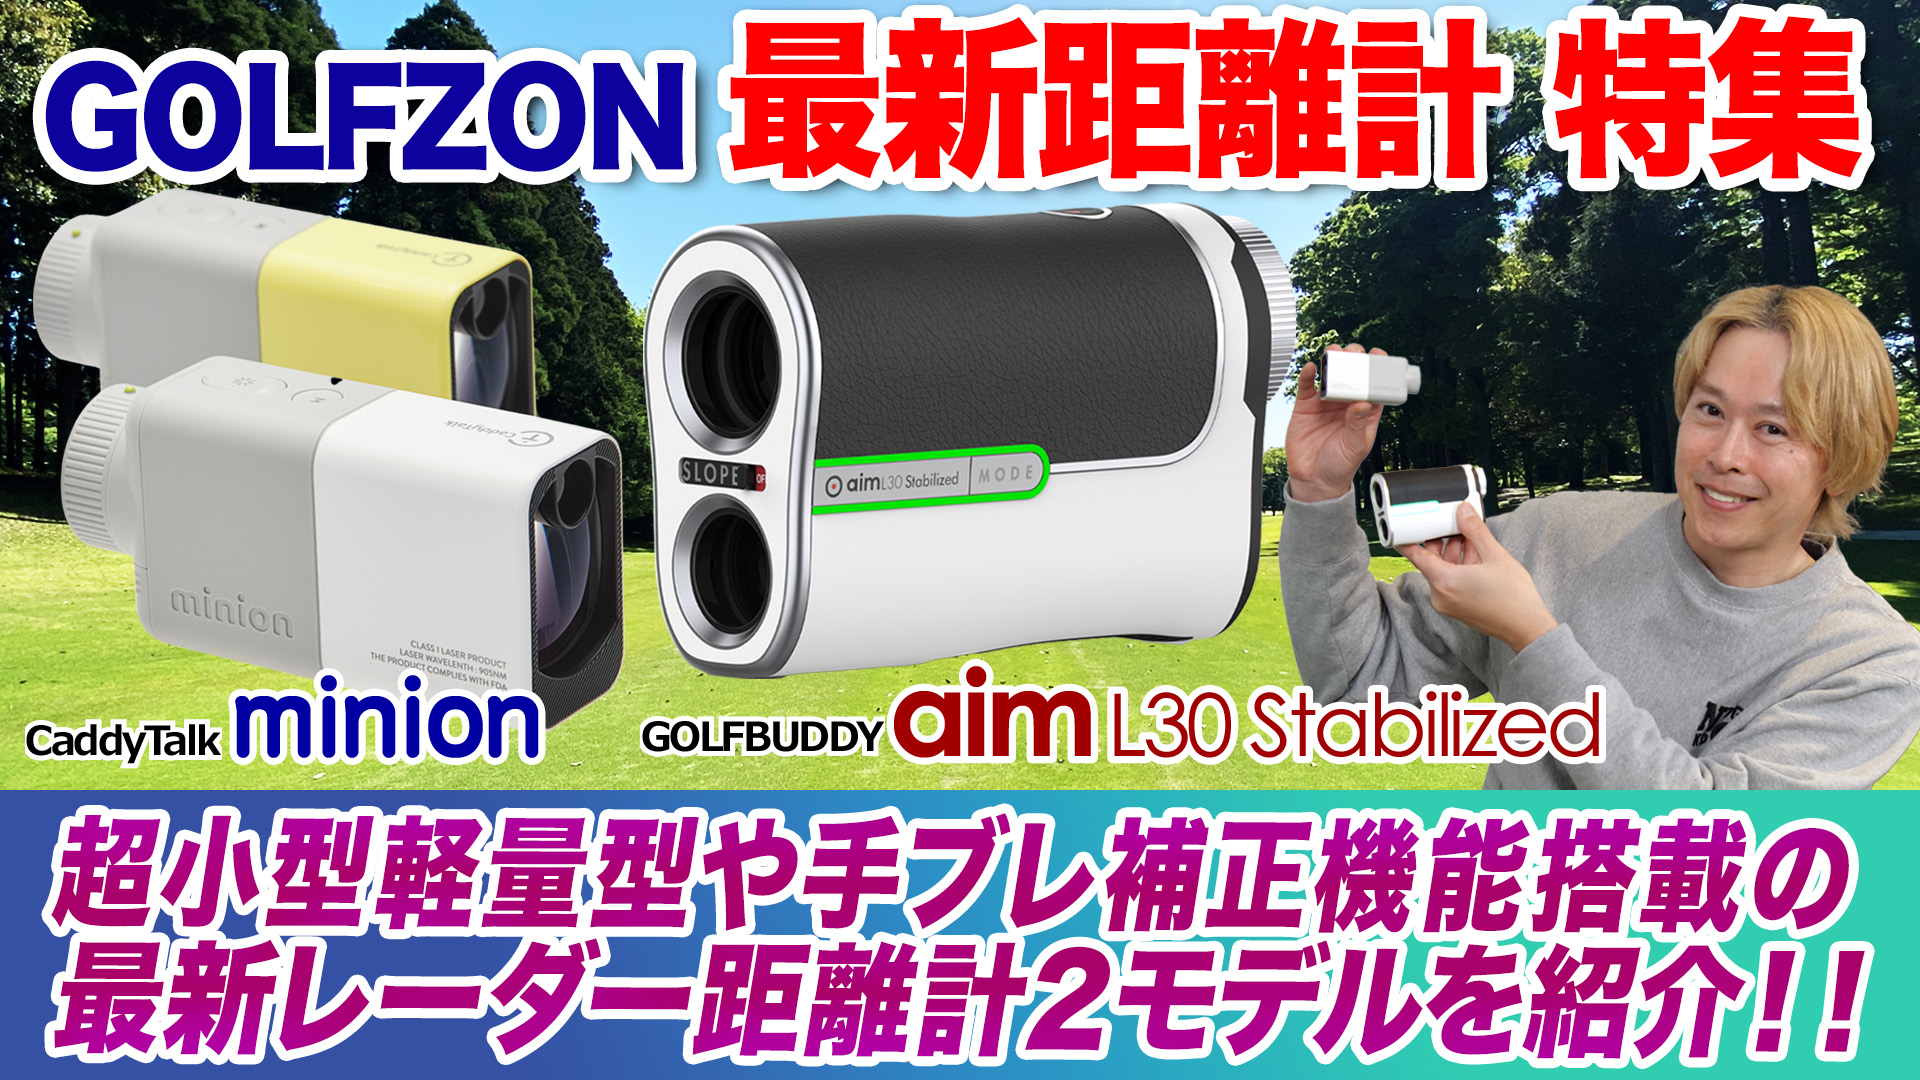 ゴルフライター鶴原さんがゴルフゾン最新レーザー距離計を解説！